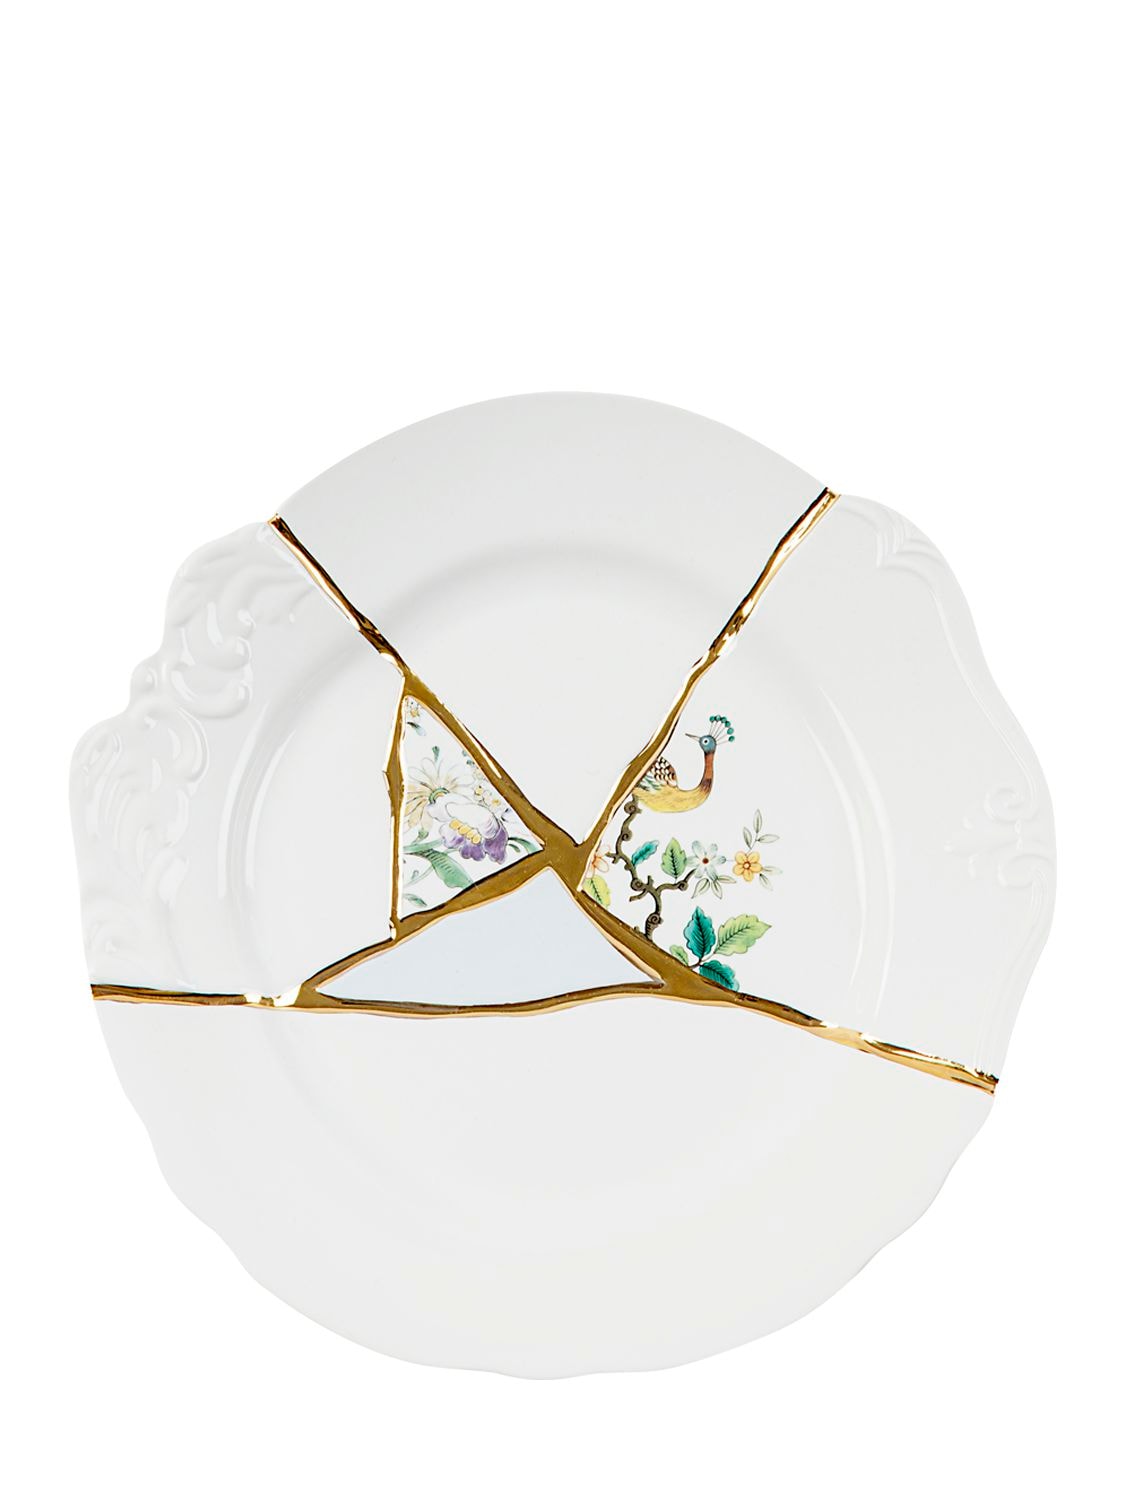 Image of Kintsugi Porcelain Dinner Plate